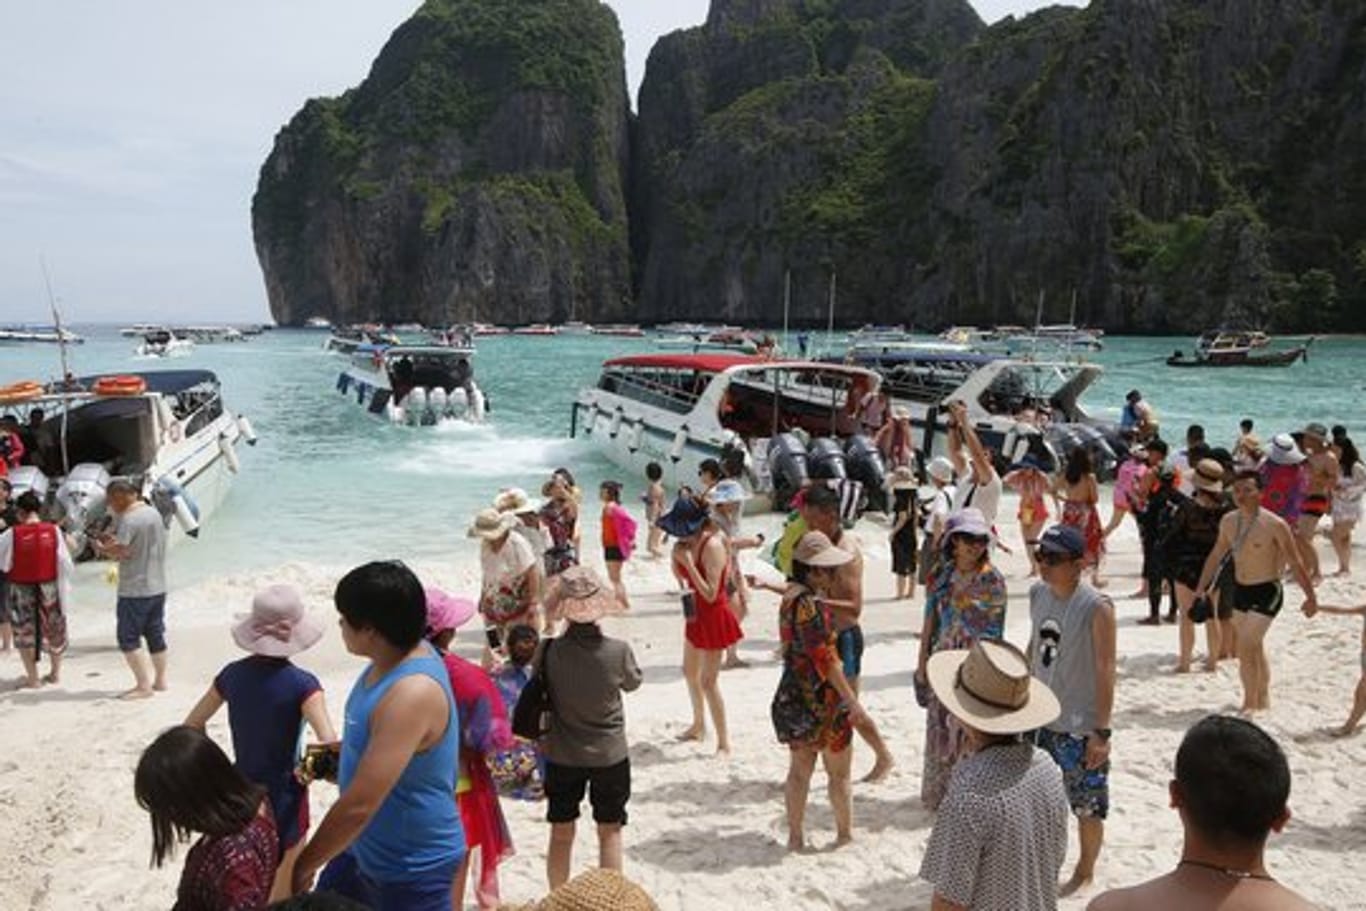 Das ist einfach zu viel: Touristenansturm in der Maya Bay, dem Strand, der durch den Film "The Beach" bekannt wurde.